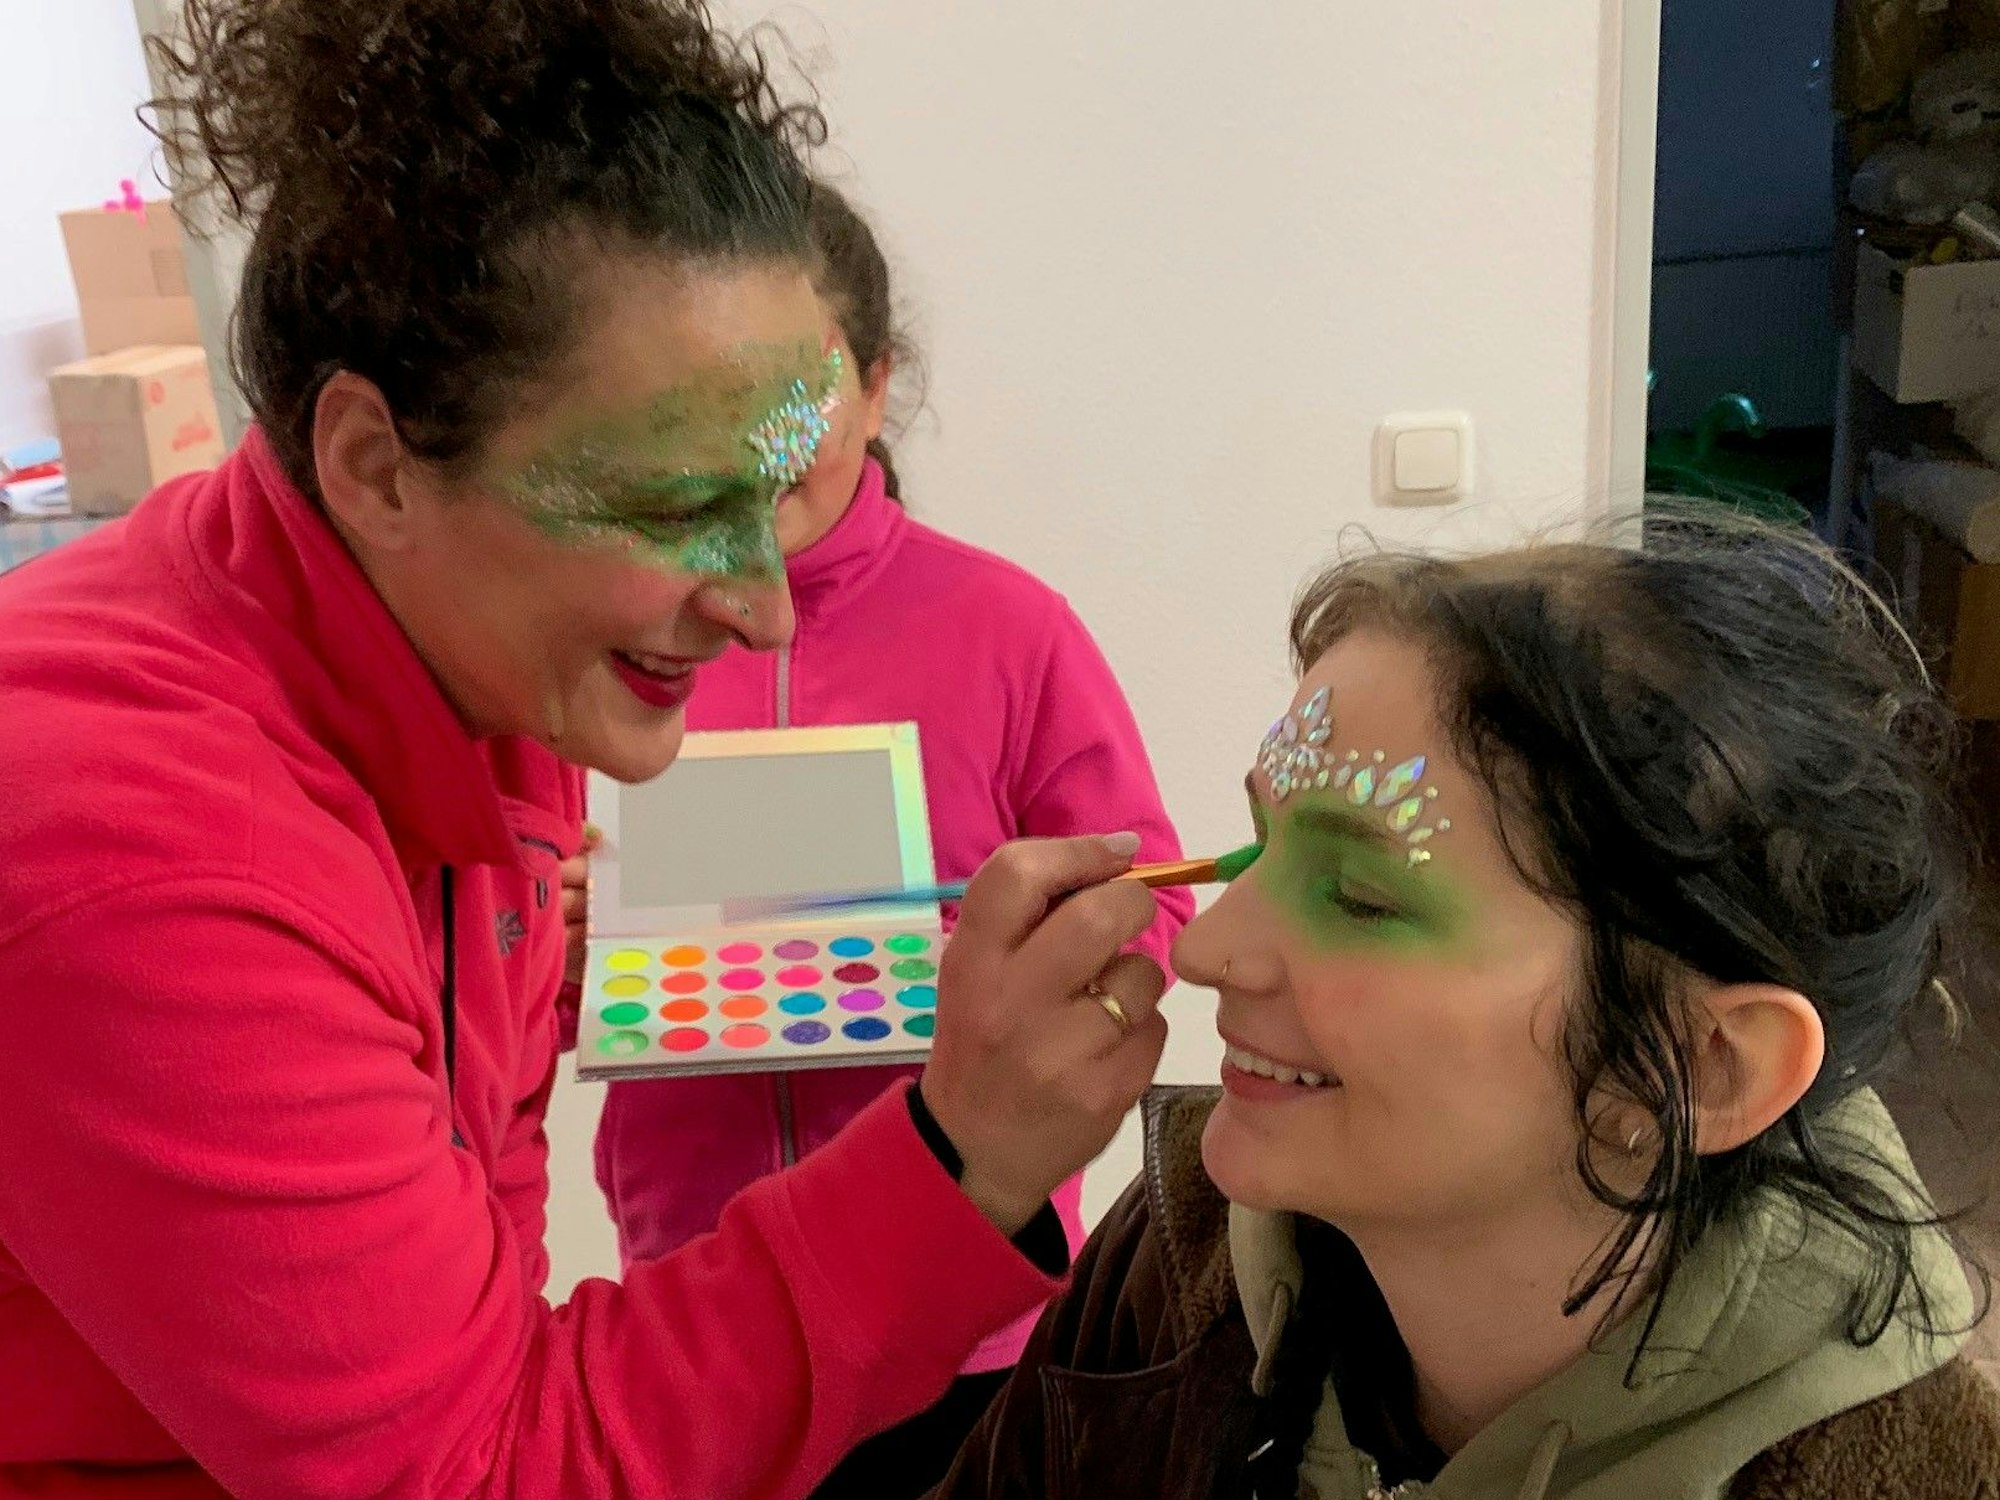 Leticia Becker, ebenfalls Lichterzug-Profi, schnappt sich den Farbkasten und schminkt et Elena.